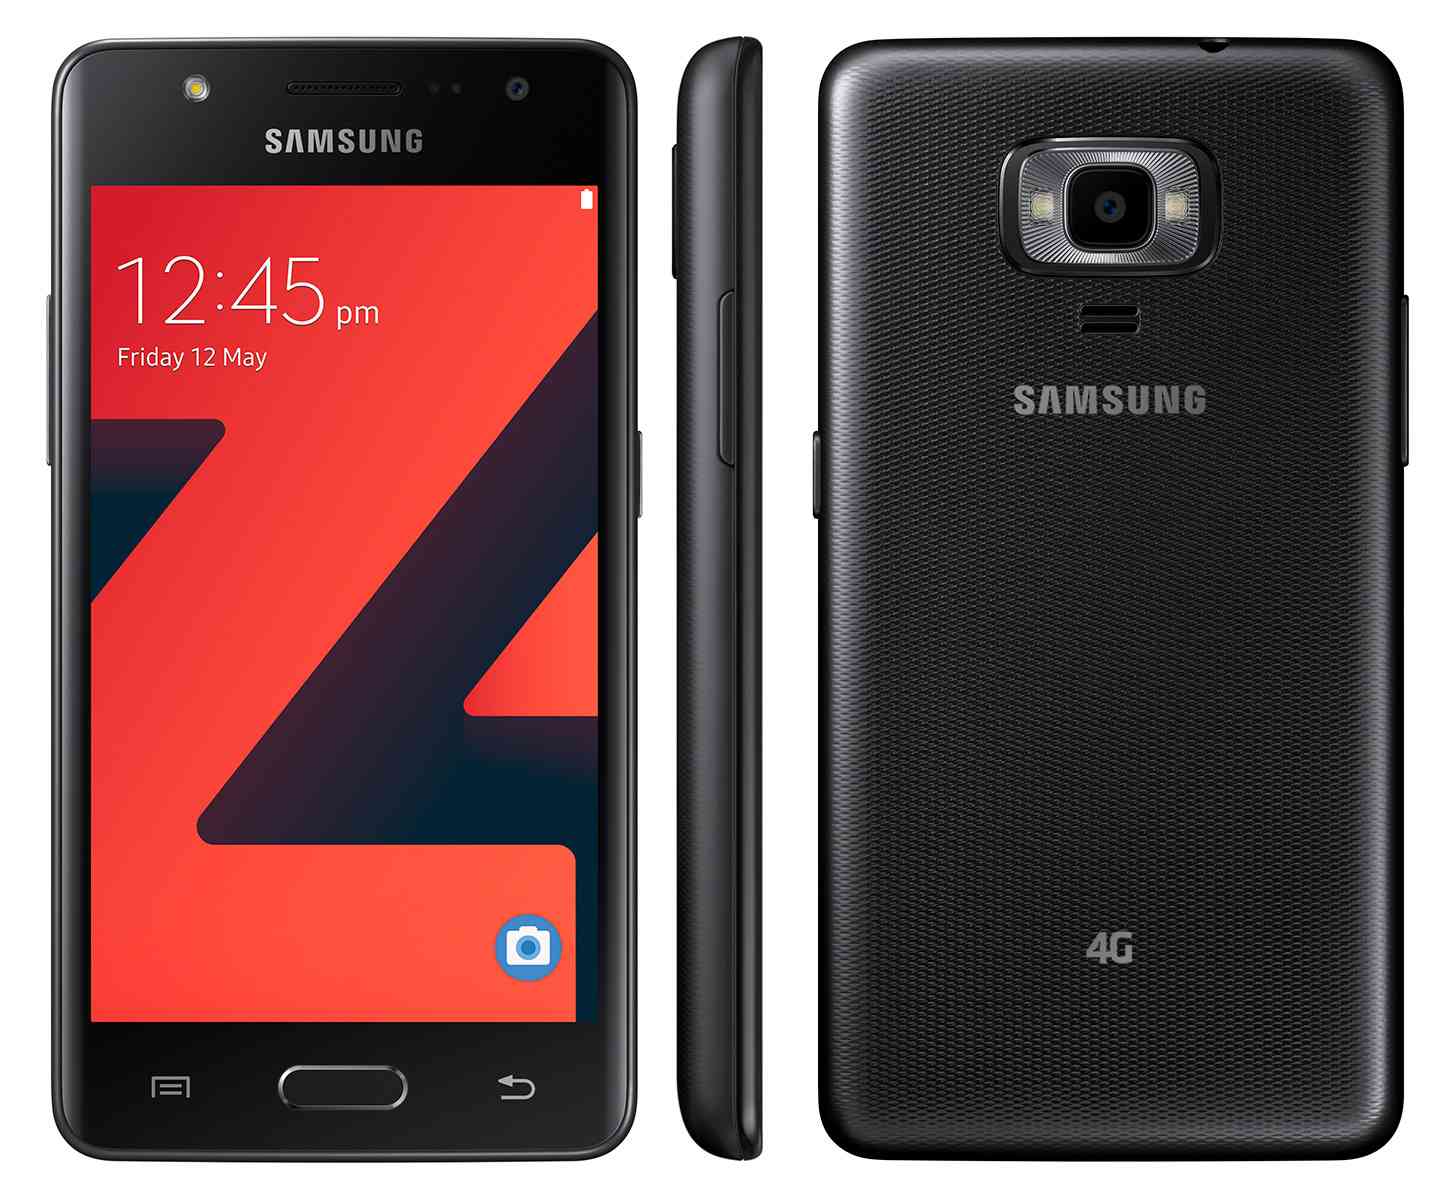 Анонсированный смартфон Samsung Z4 с поддержкой LTE на базе Tizen 3.0 